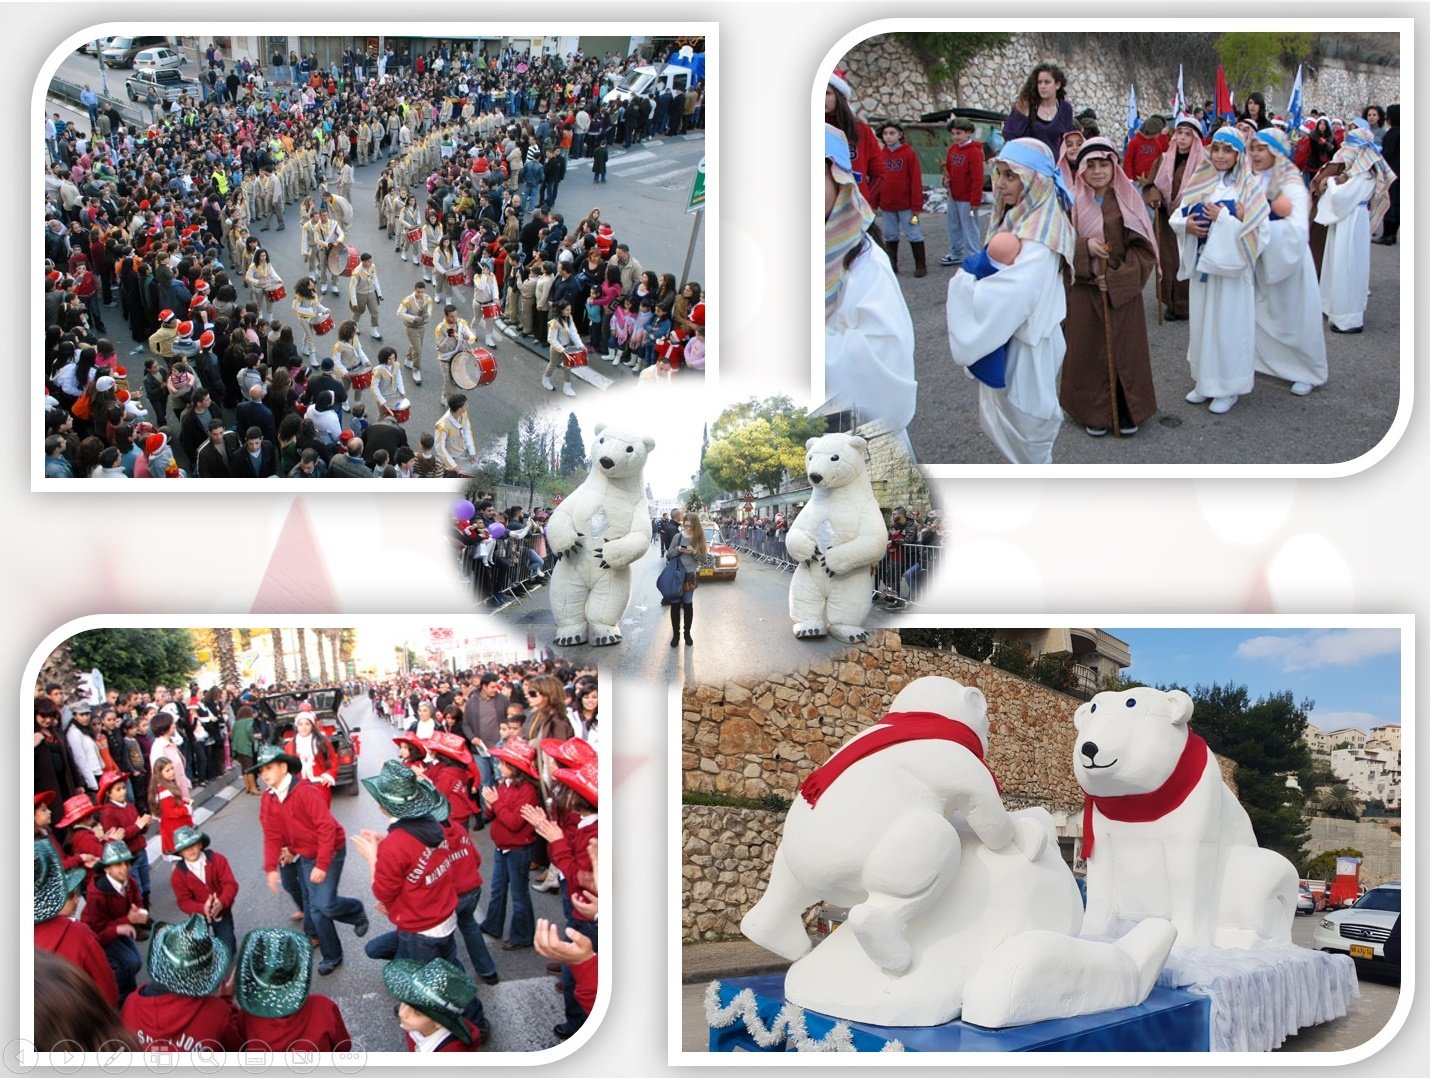 بمناسبة مرور 40 عاماً على تأسيس مسيرة الميلاد في الناصرة، جمعية الموكب تُصدر "قصة مسيرة الميلاد"-2